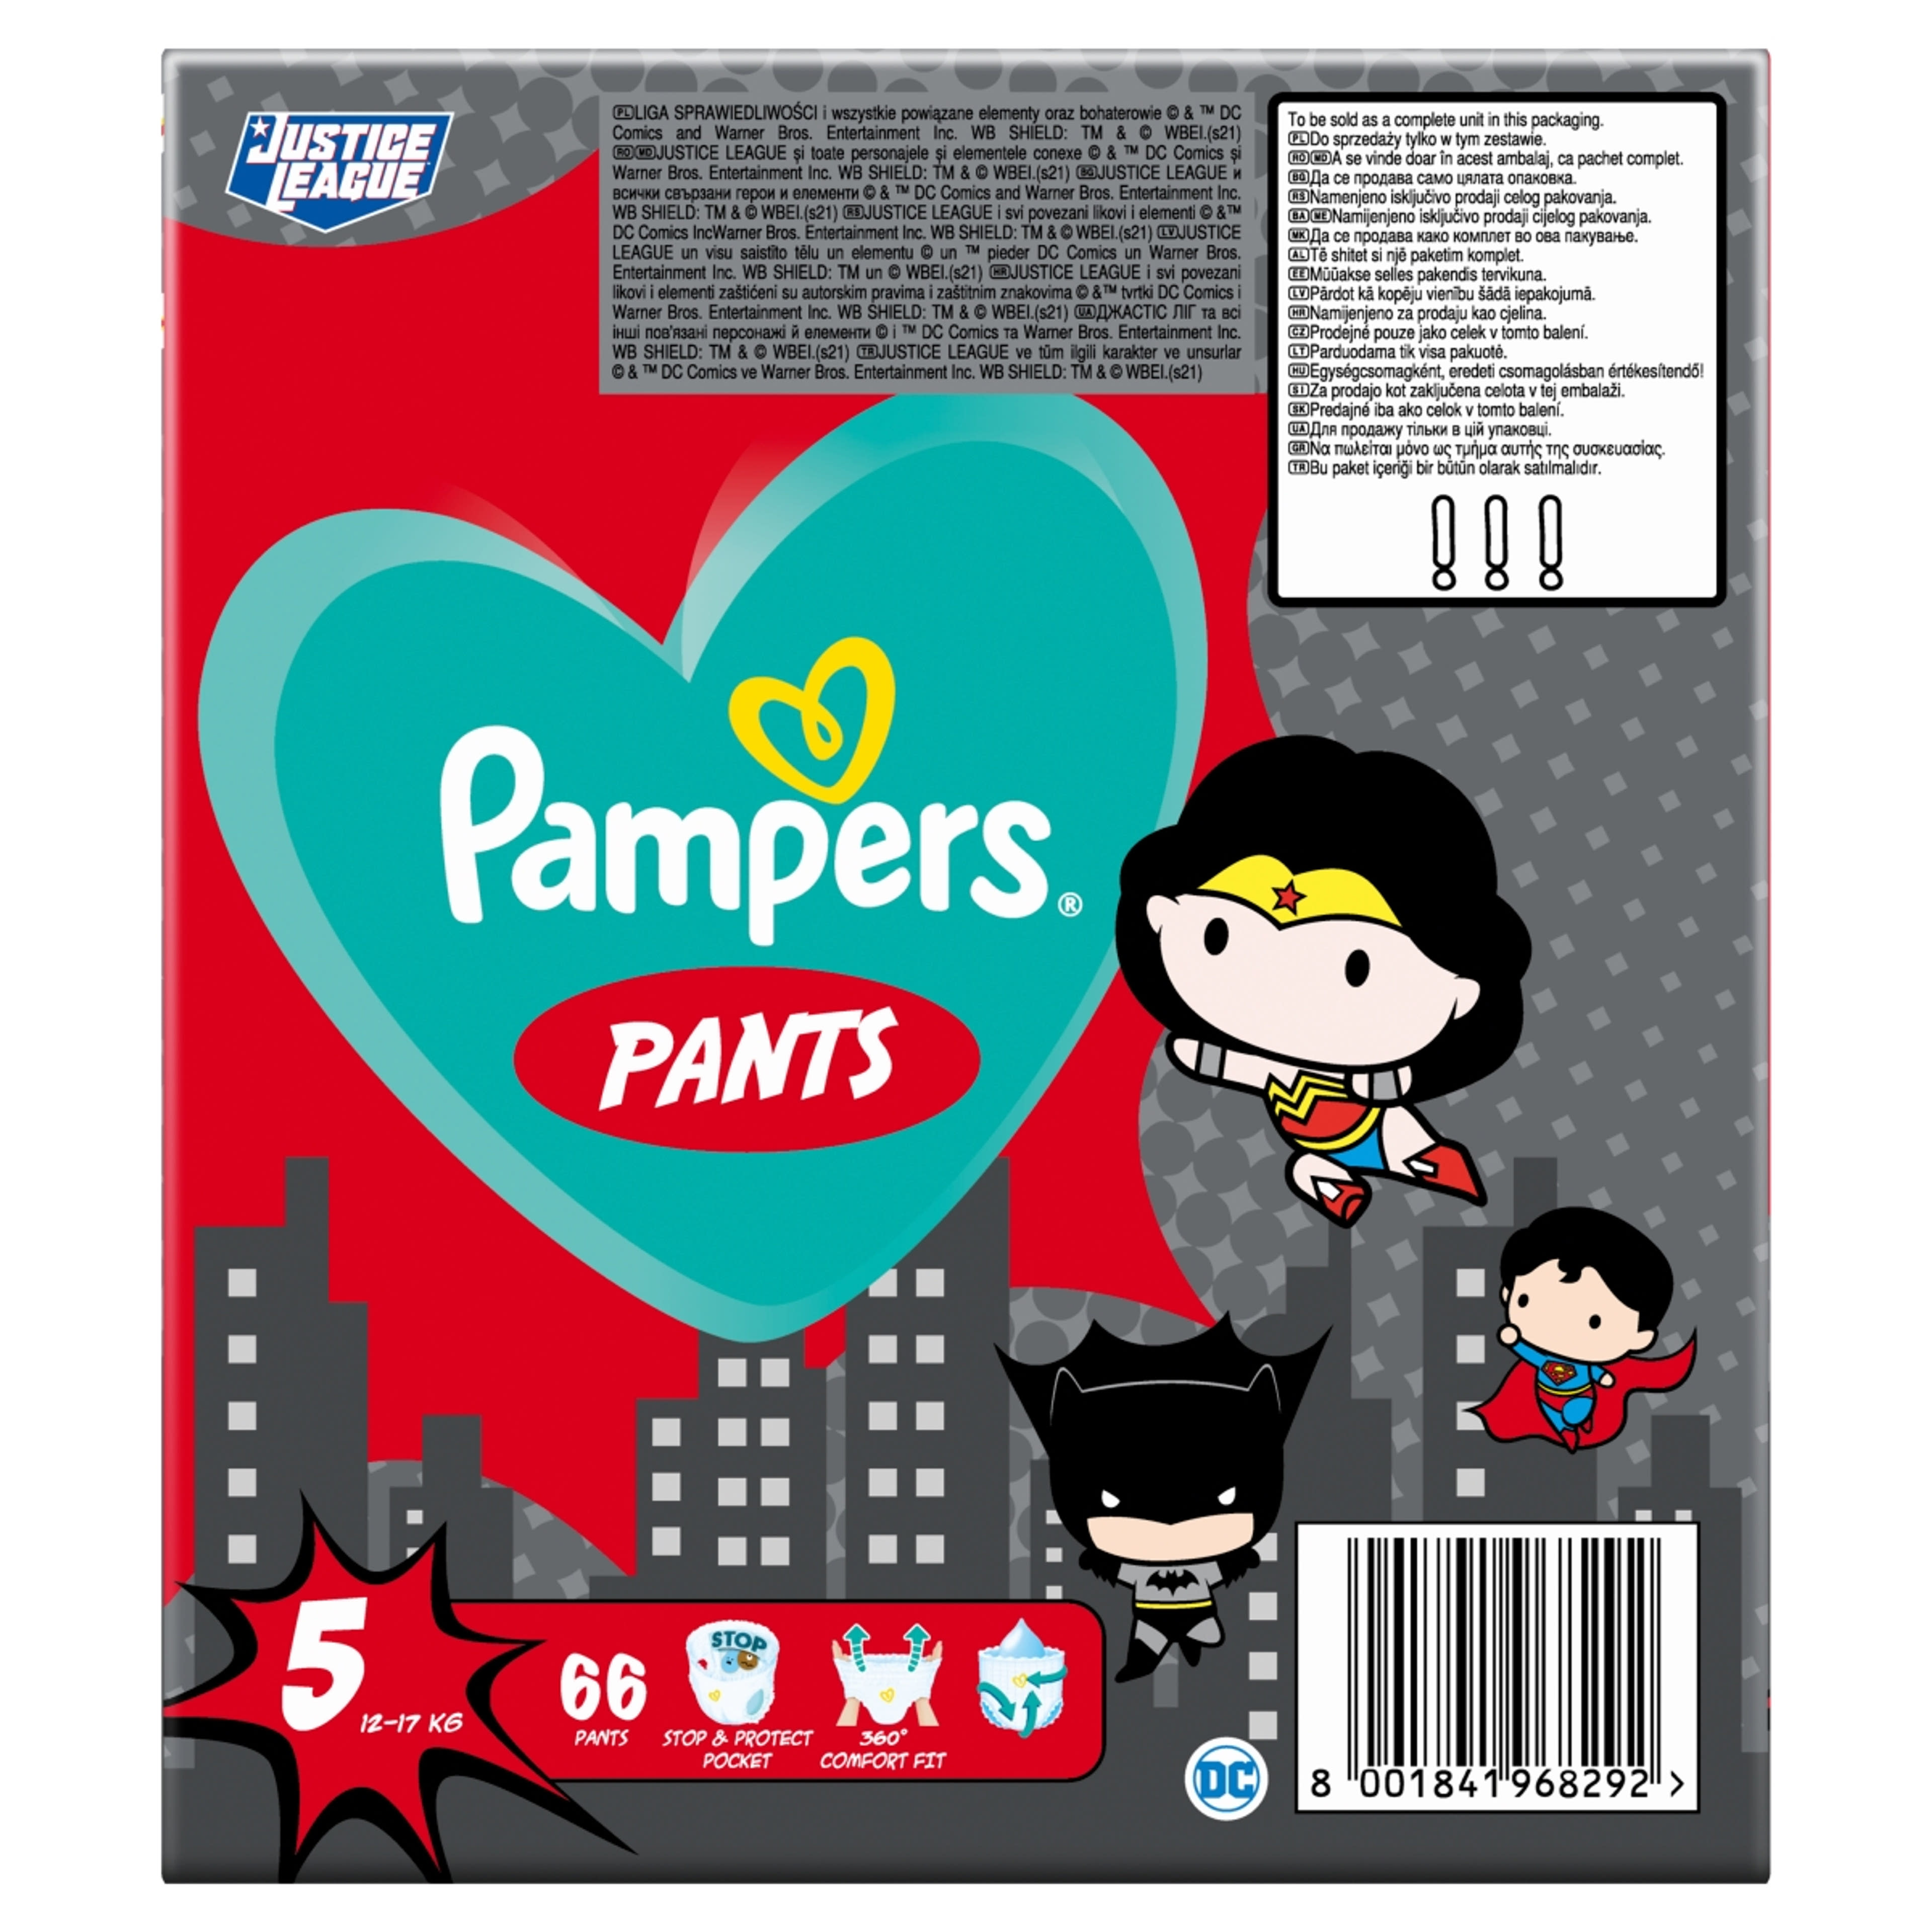 Pampers Pants Giant Pack+ Superheroes 5-ös 12-17 kg - 66 db-1